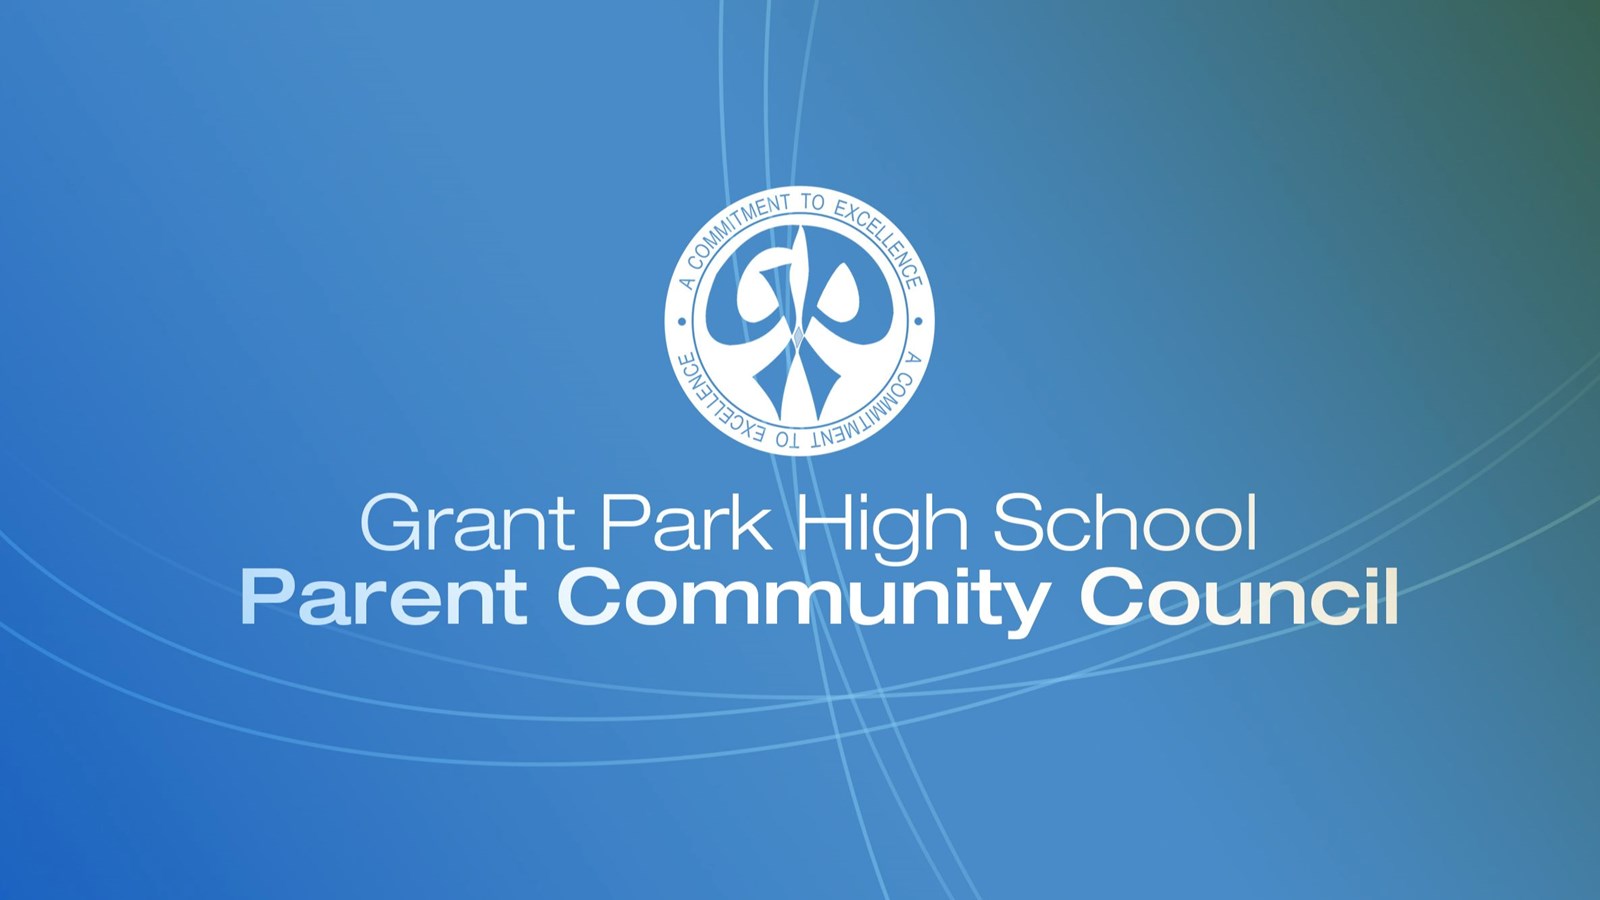 Grant Park High School Parent Community Council